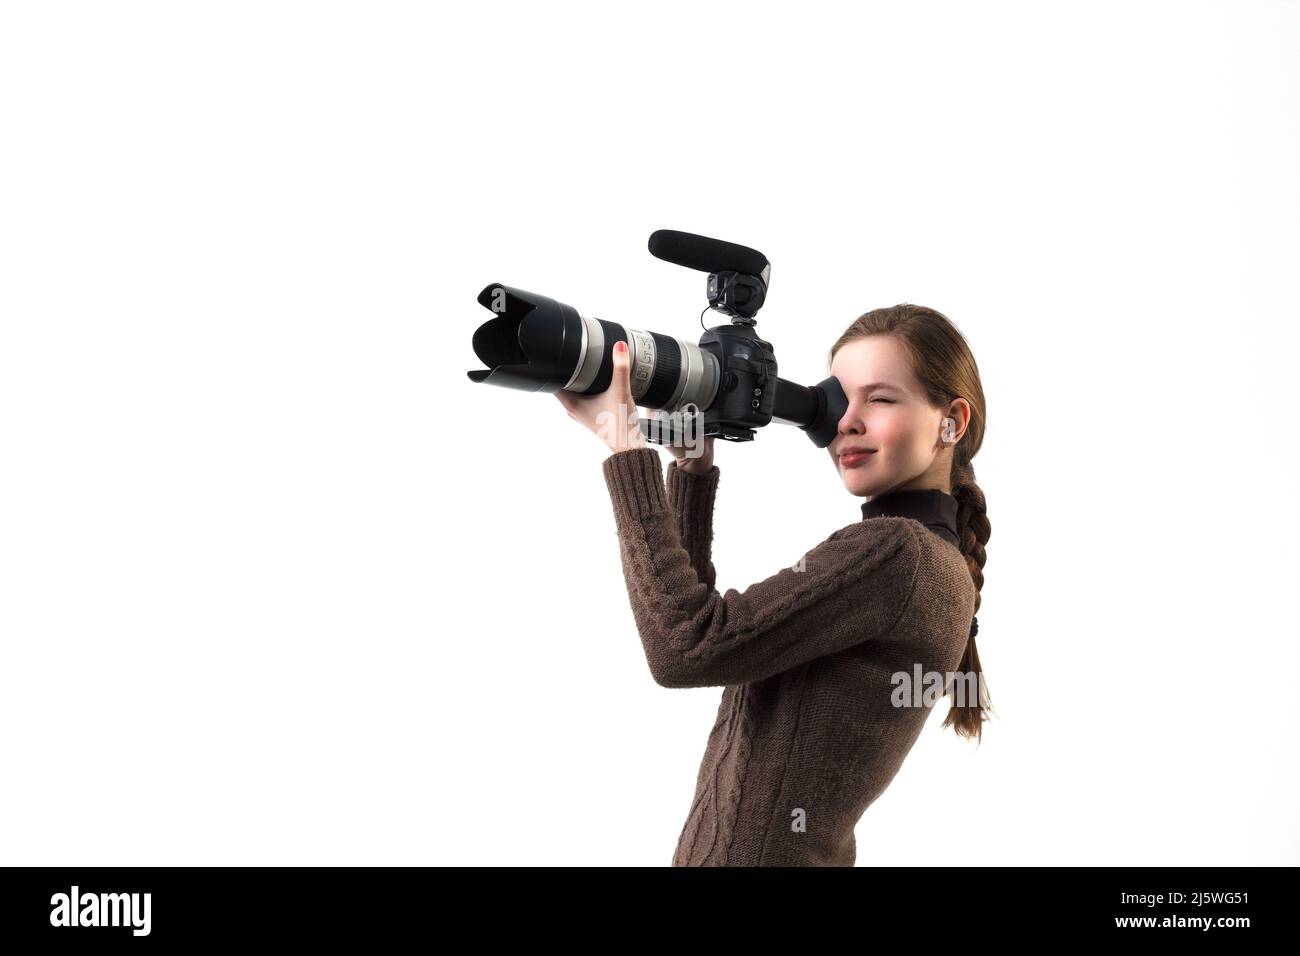 Die schöne Fotografin Mädchen mit professionellen dslr-Kamera posiert auf einem weißen Hintergrund im Studio. Foto lernen, studieren, Trainingskonzept Stockfoto